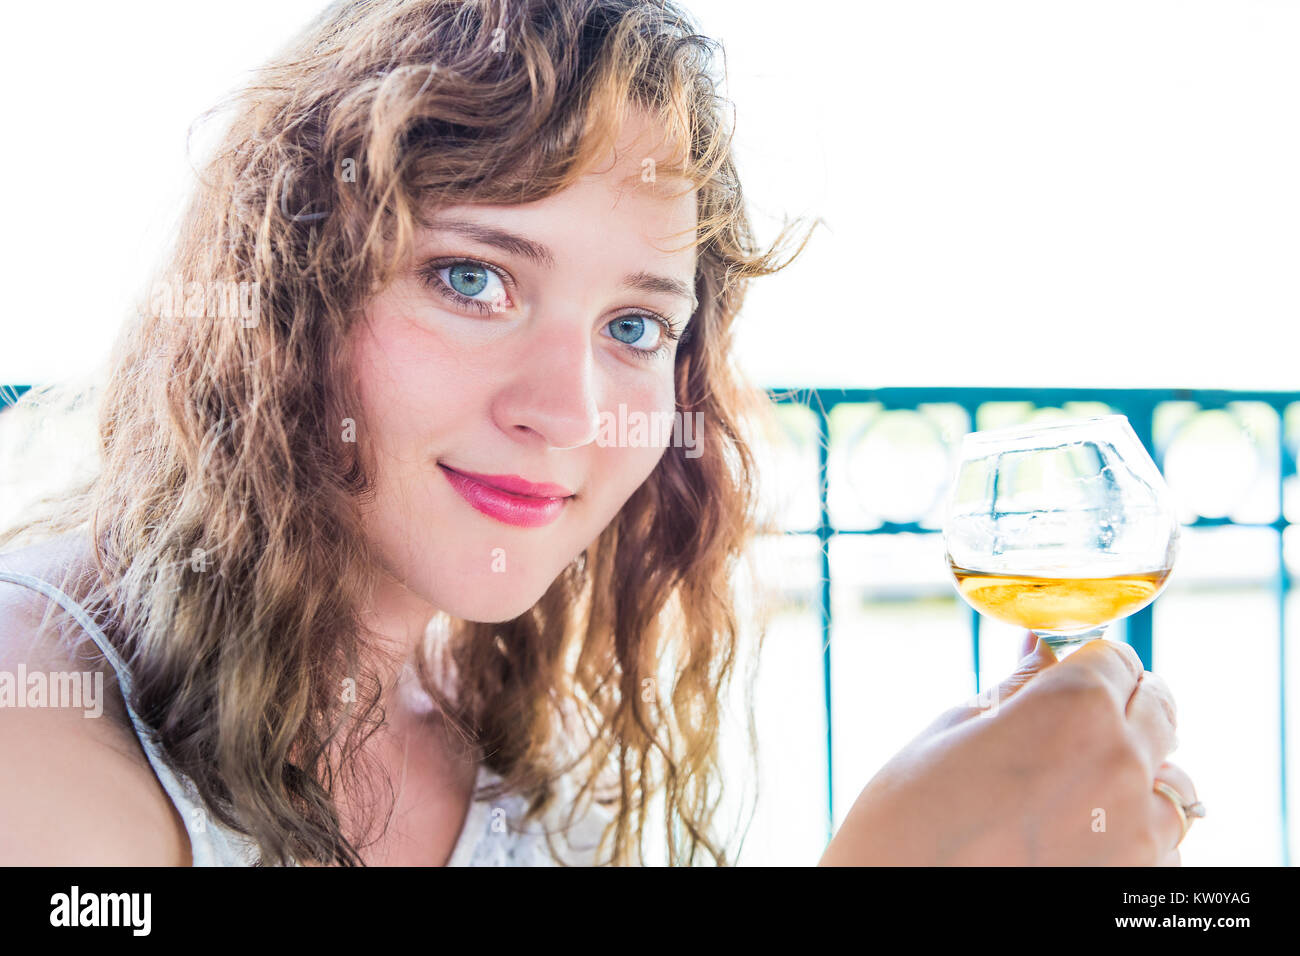 Closeup portrait d'un happy smiling young woman holding bourbon rhum boisson alcoolisée en main par l'eau dans un restaurant d'été Banque D'Images